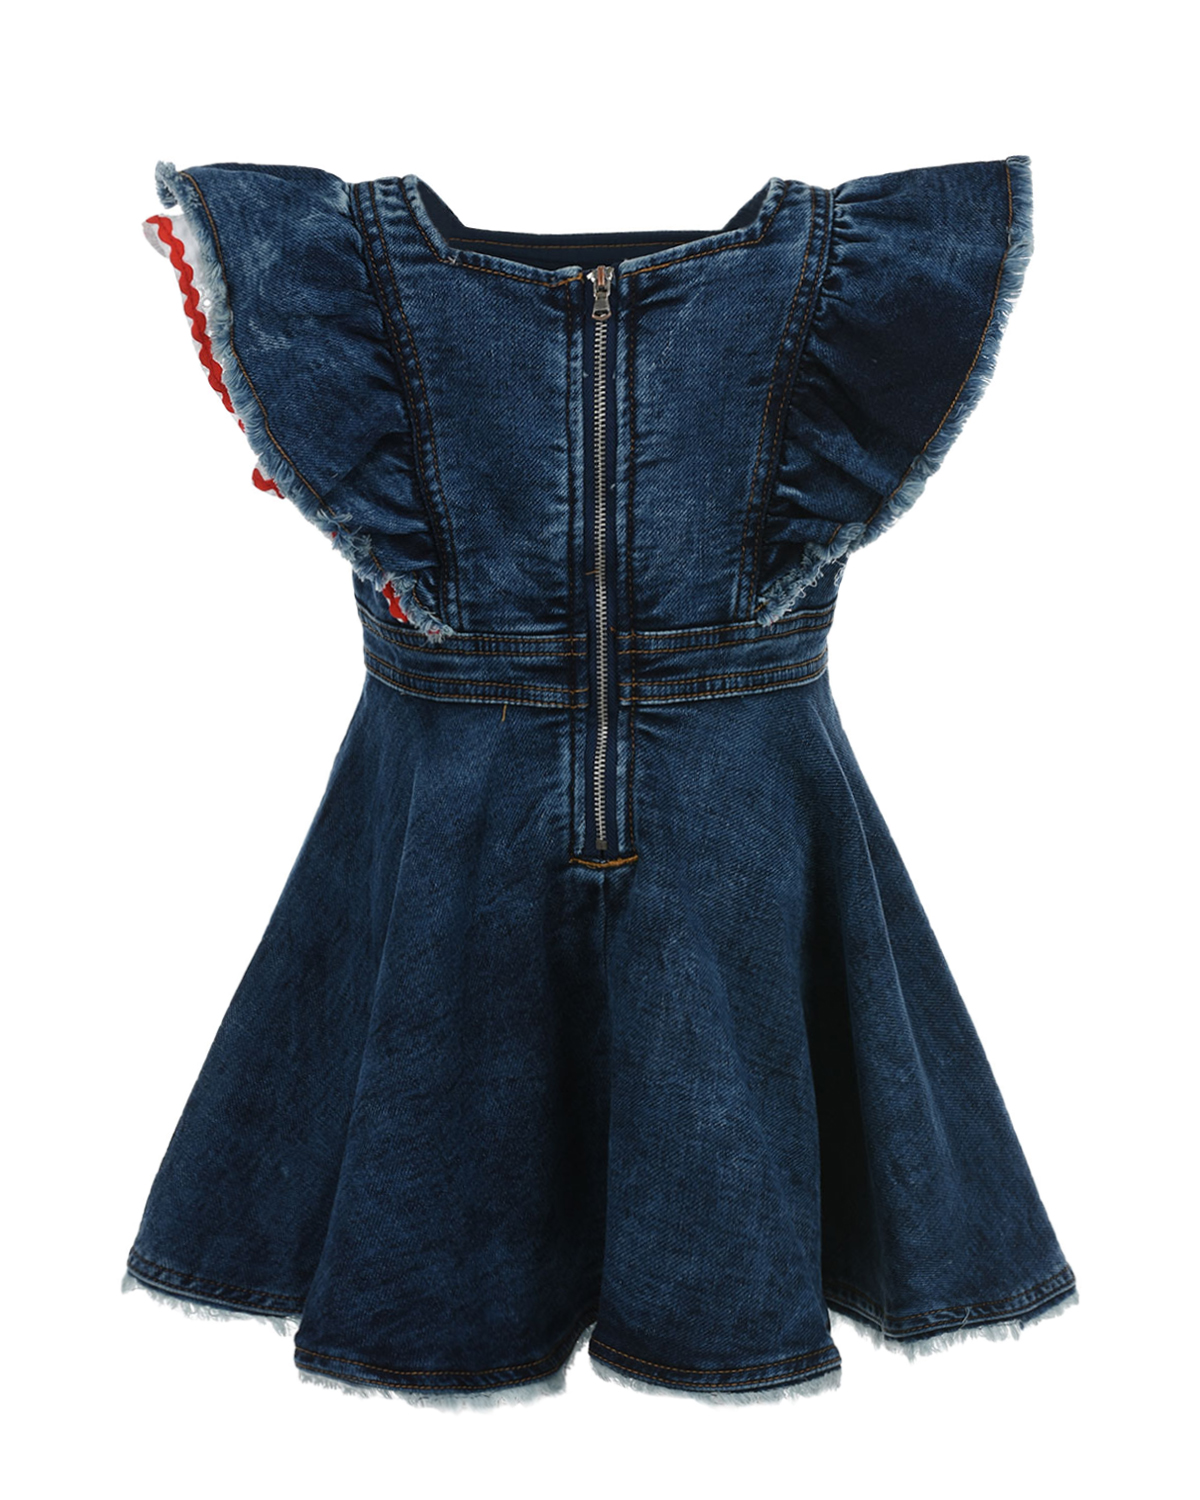 Джинсовое платье с аппликацией "клубника" Monnalisa детское, размер 116, цвет синий - фото 2